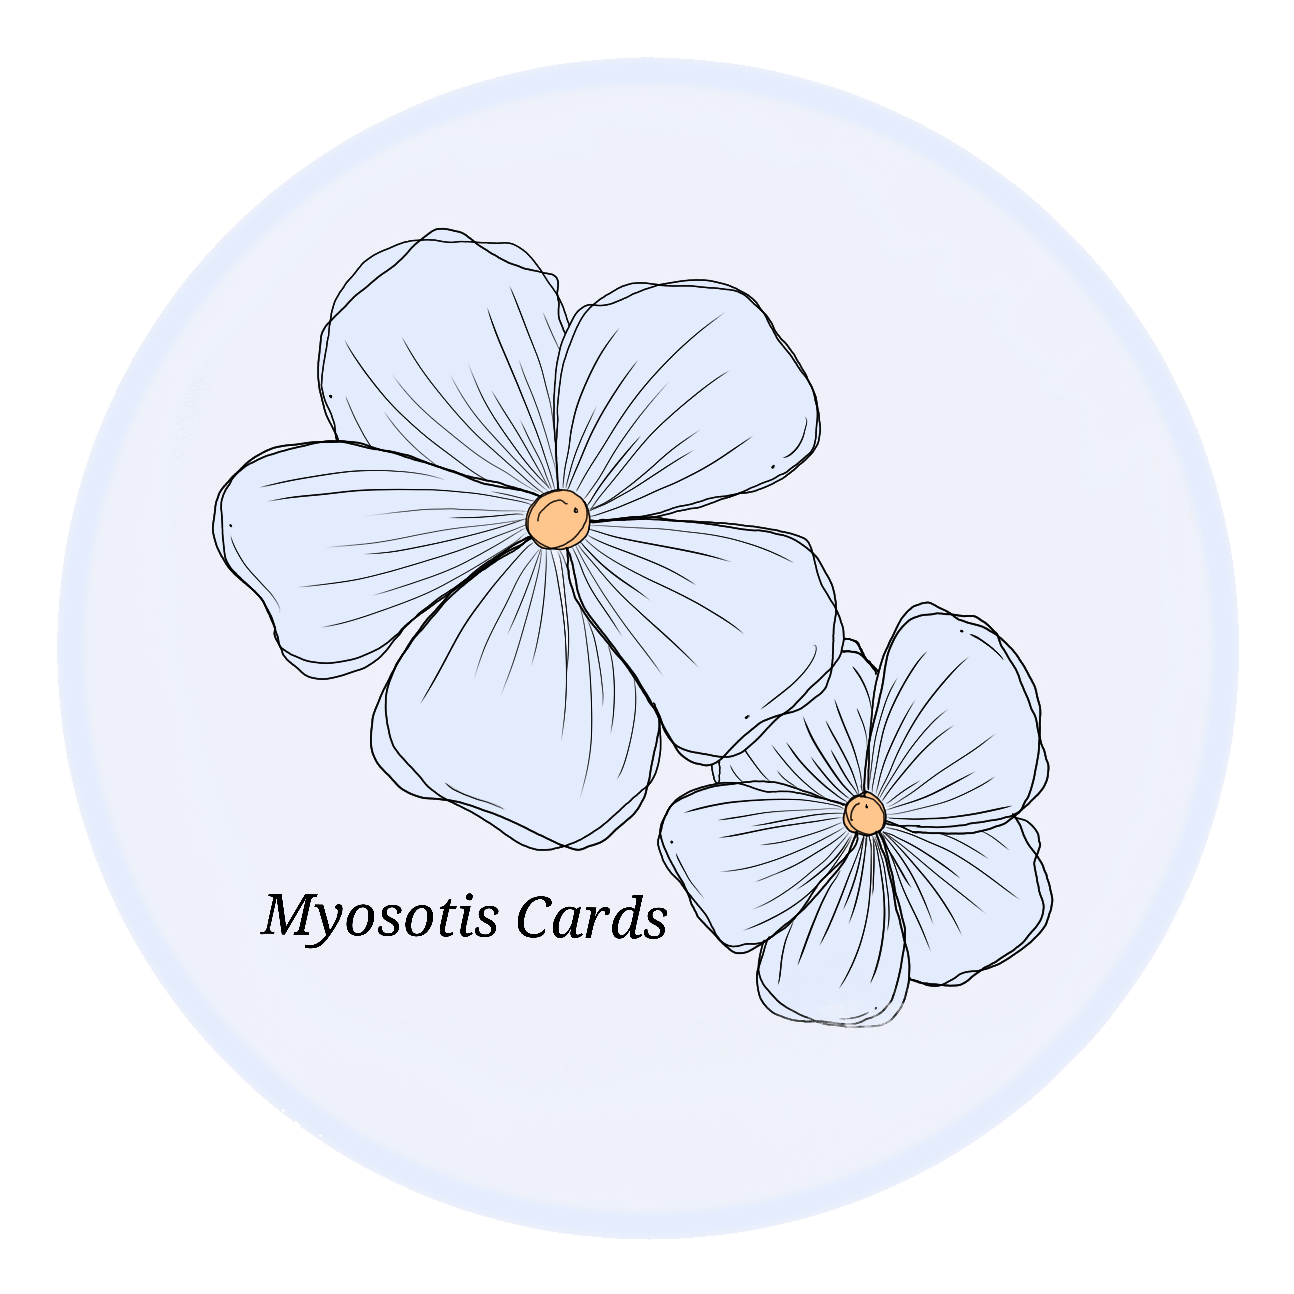 Myosotis Cards